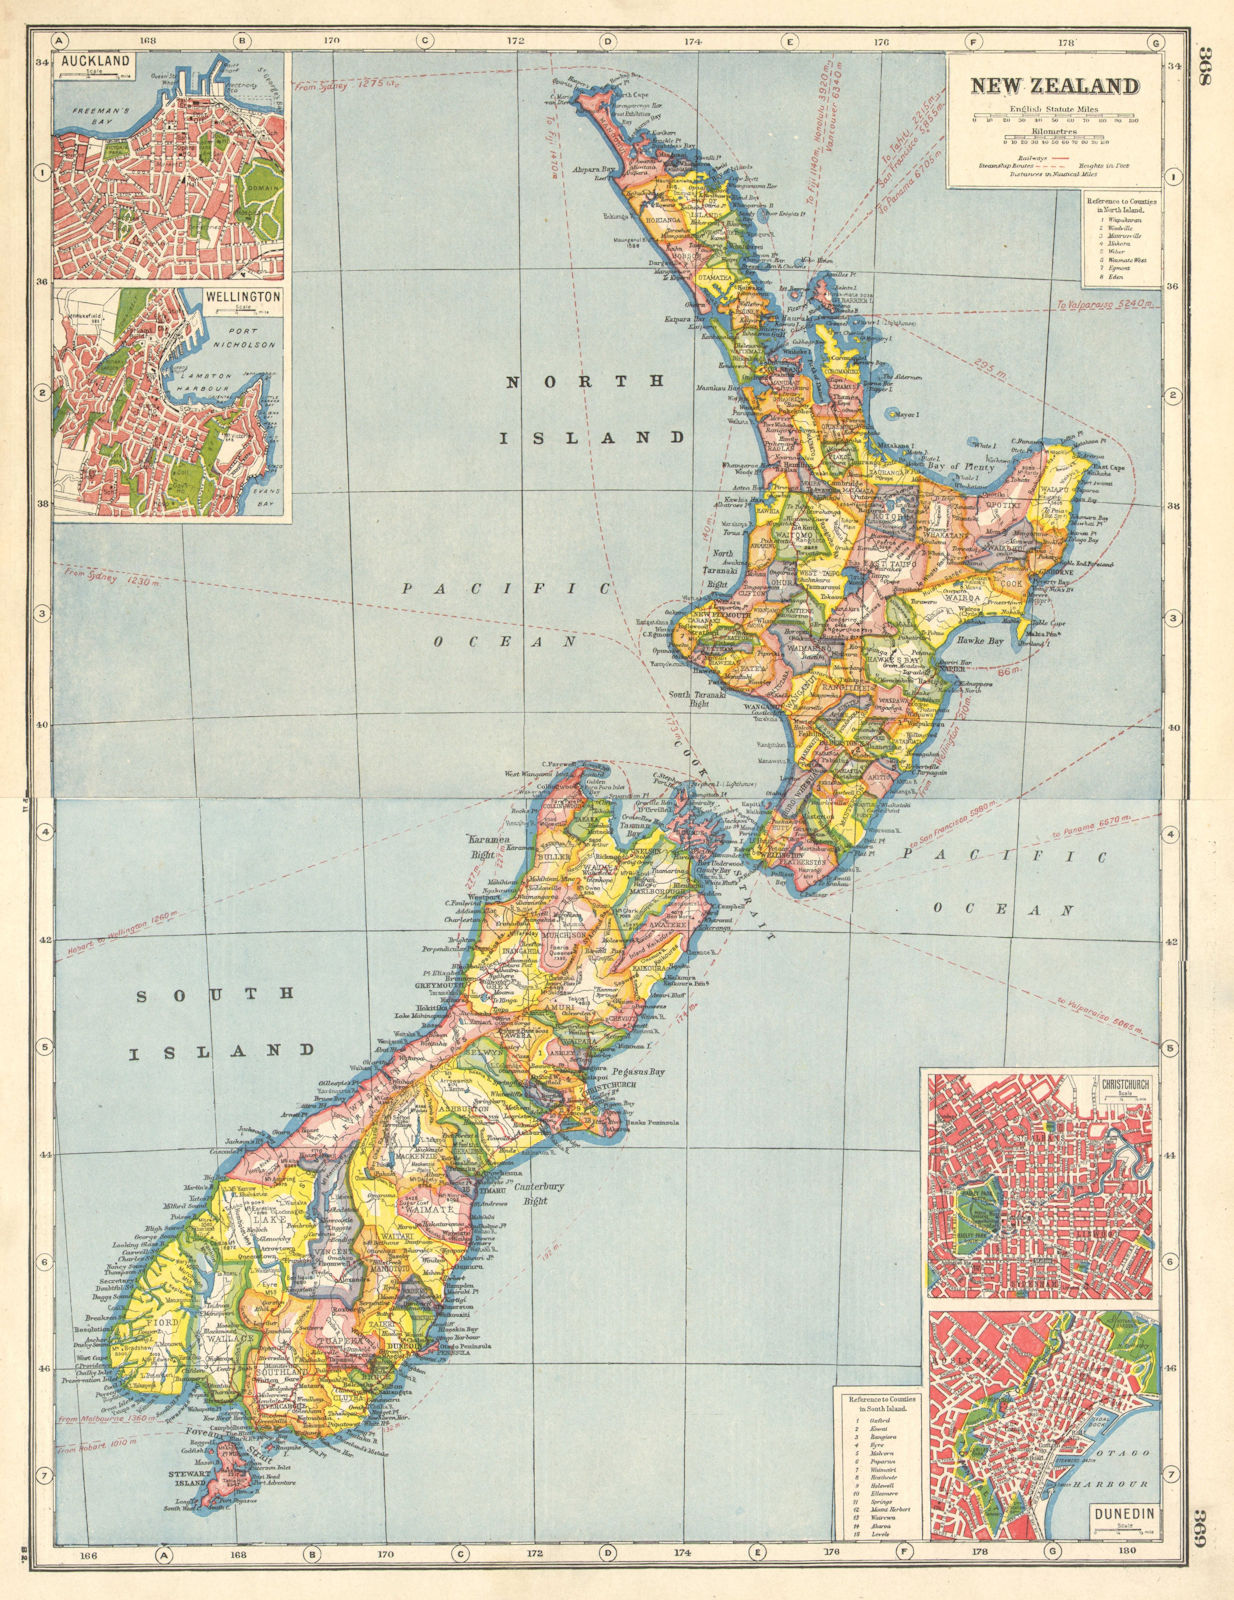 NEW ZEALAND. Counties. Auckland Wellington Christchurch Dunedin plans 1920 map